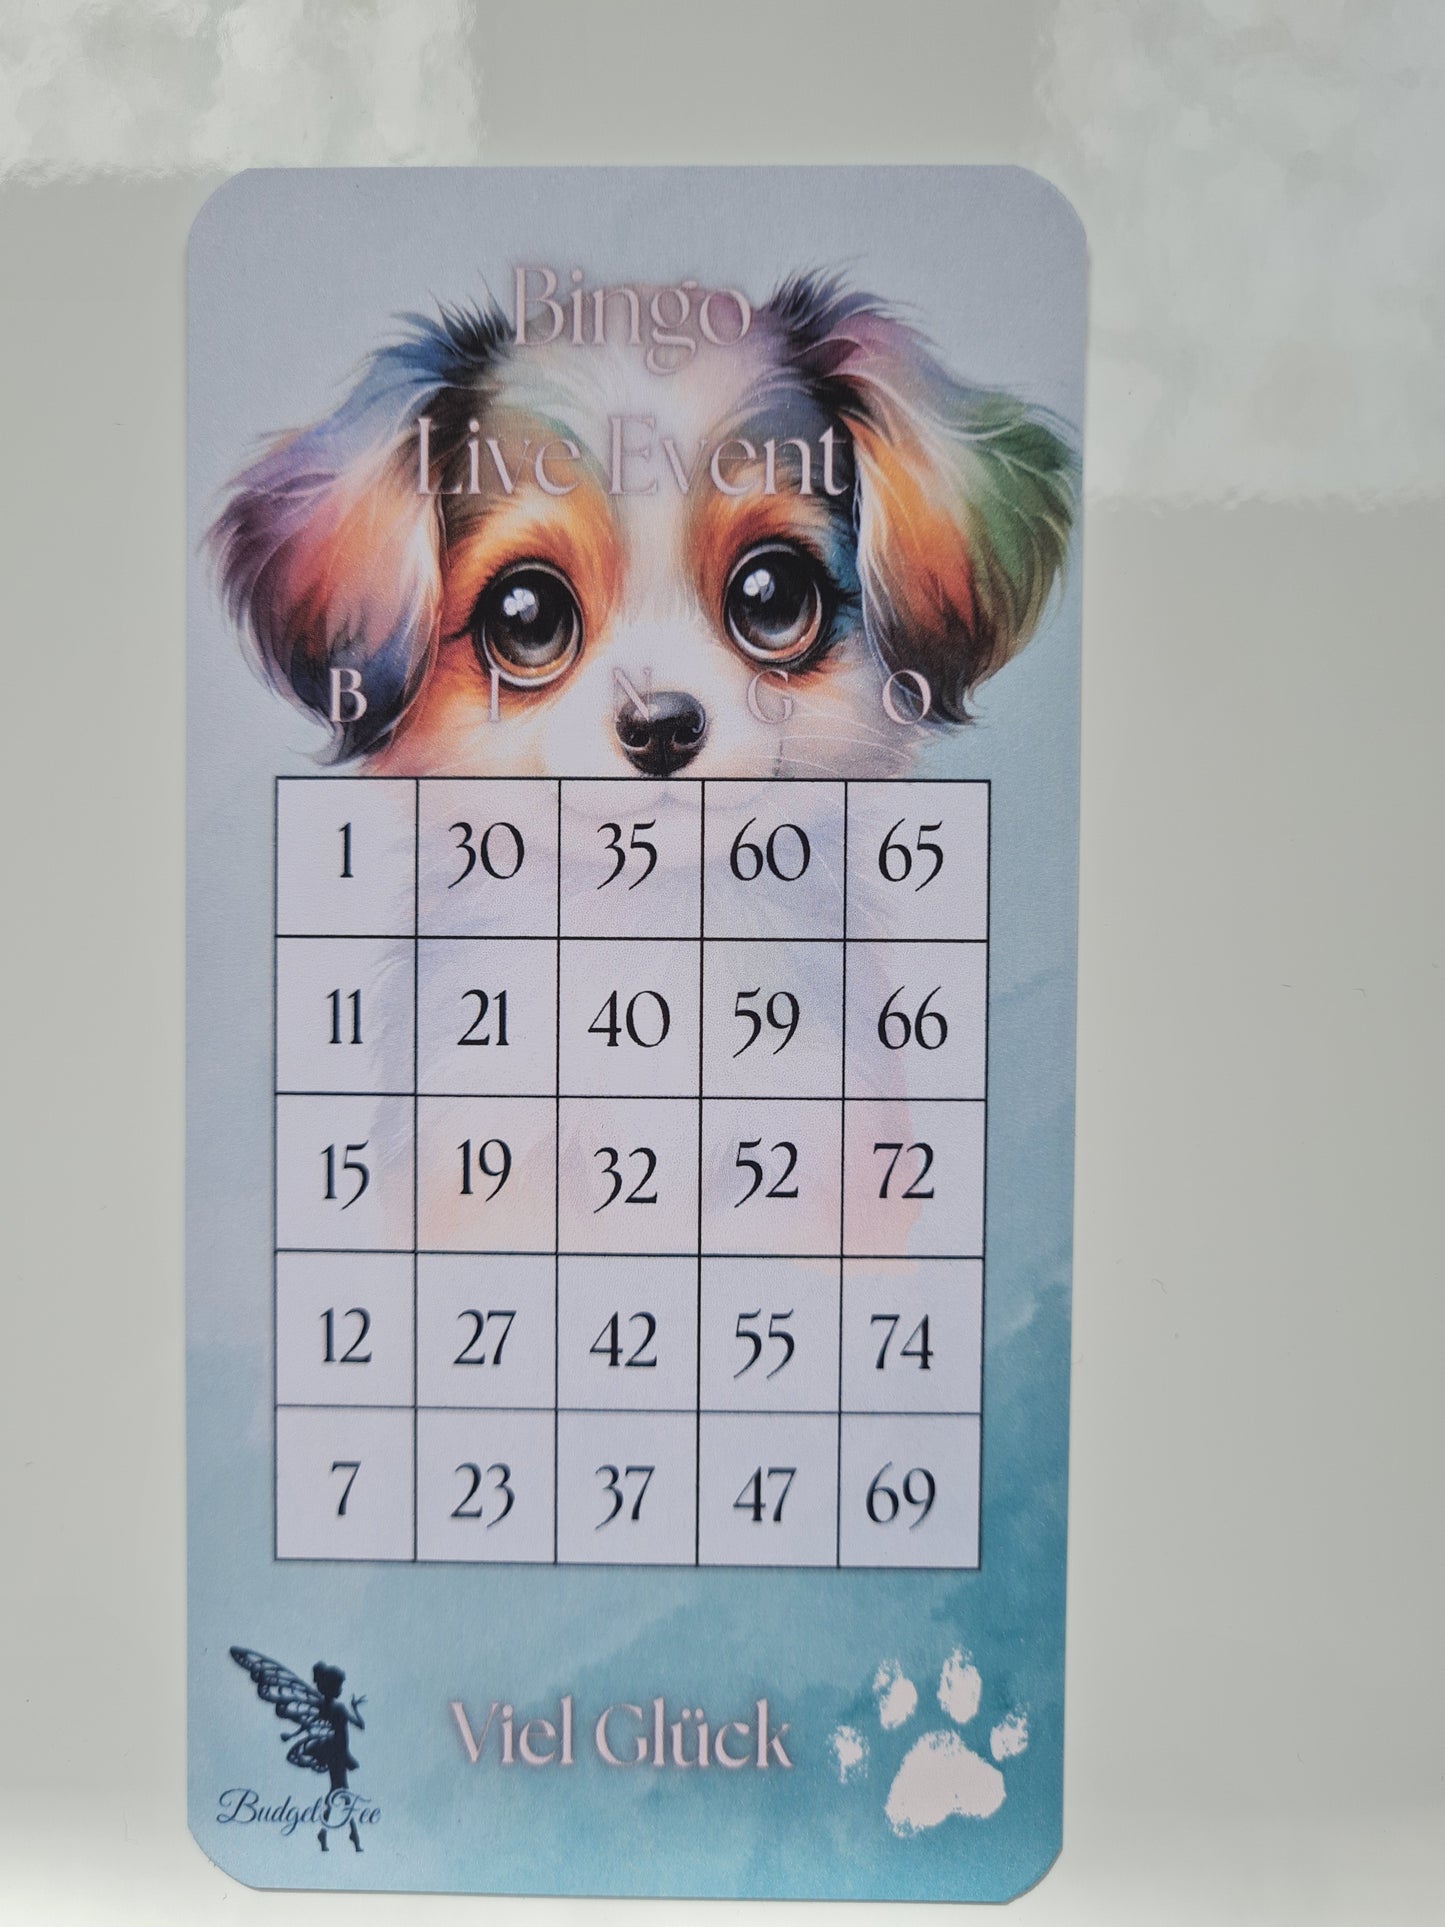 Bingo Karten für meine Live Events auf TikTok - jetzt im neuen Designs